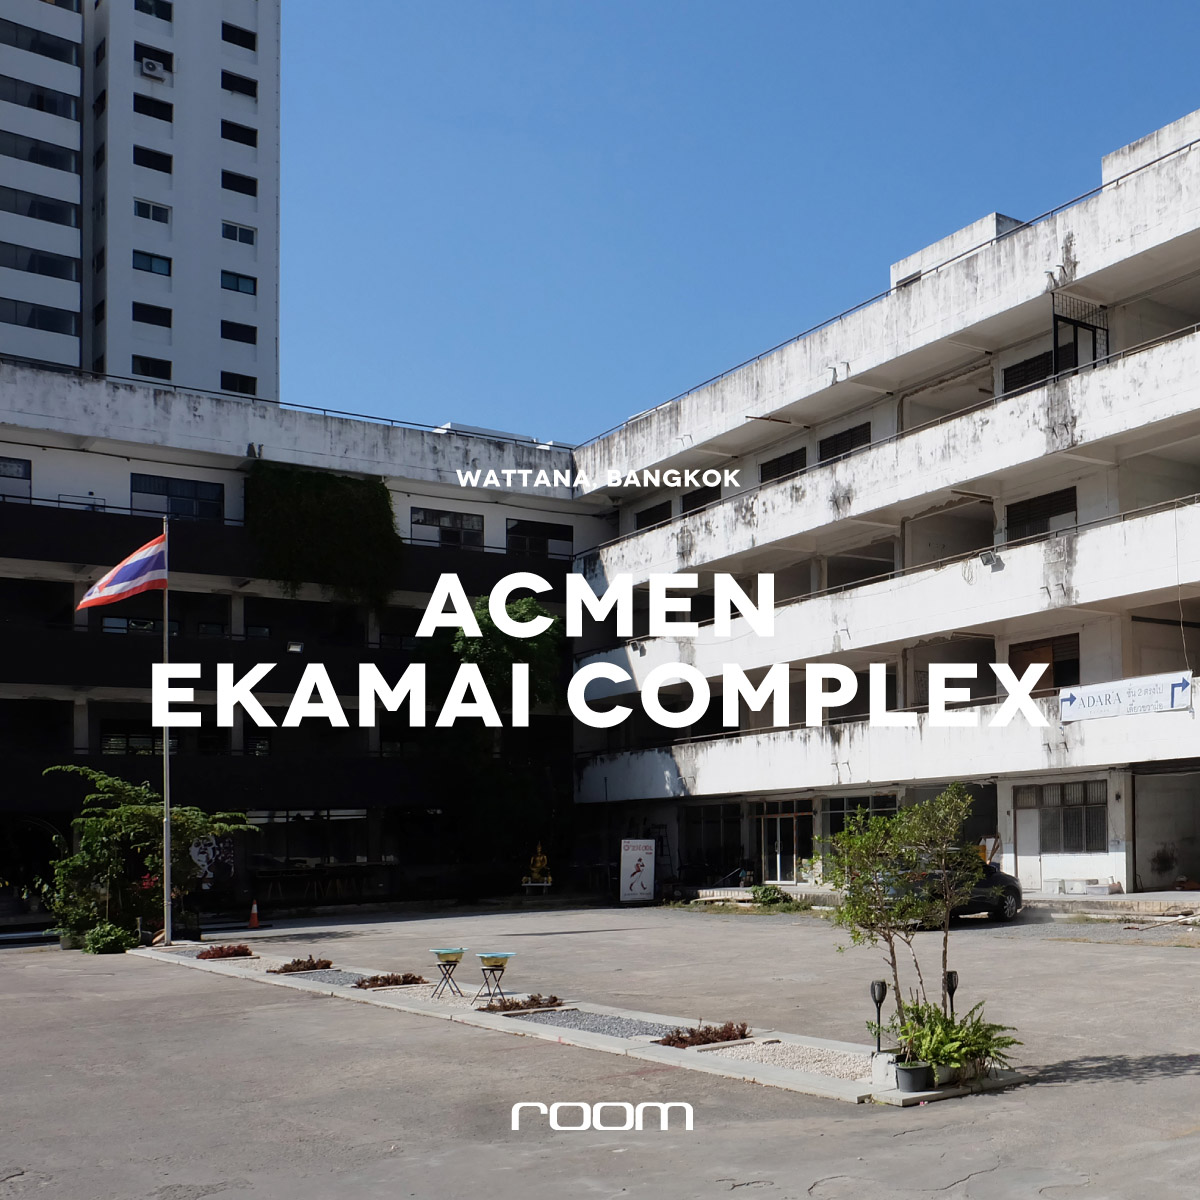 ACMEN Ekamai Complex